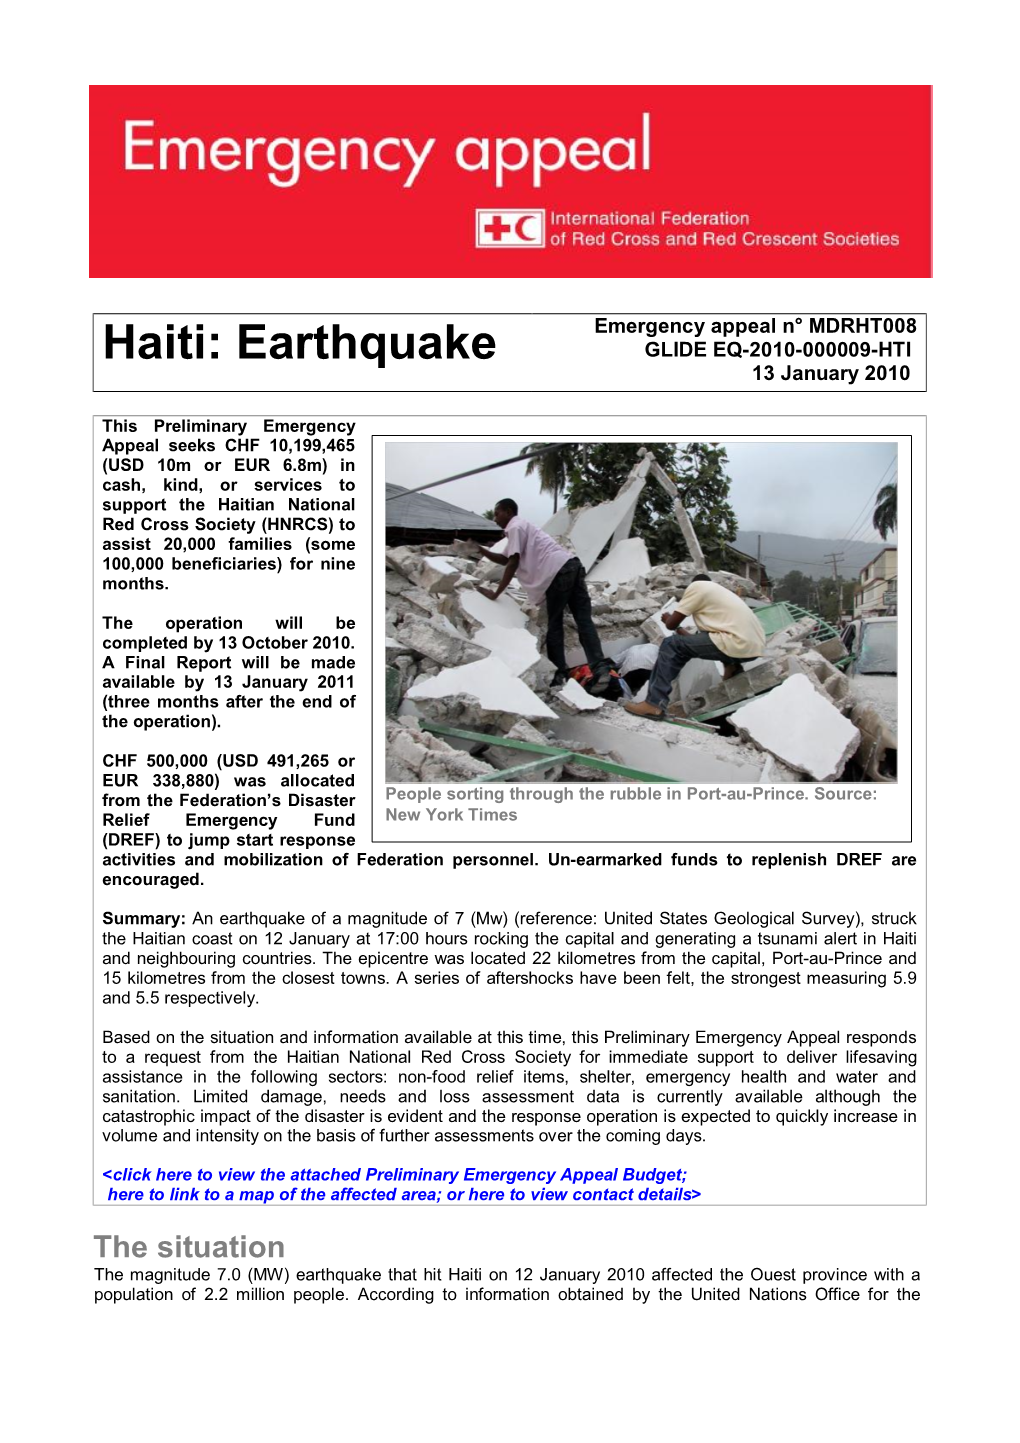 Haiti: Earthquake GLIDE EQ-2010-000009-HTI 13 January 2010